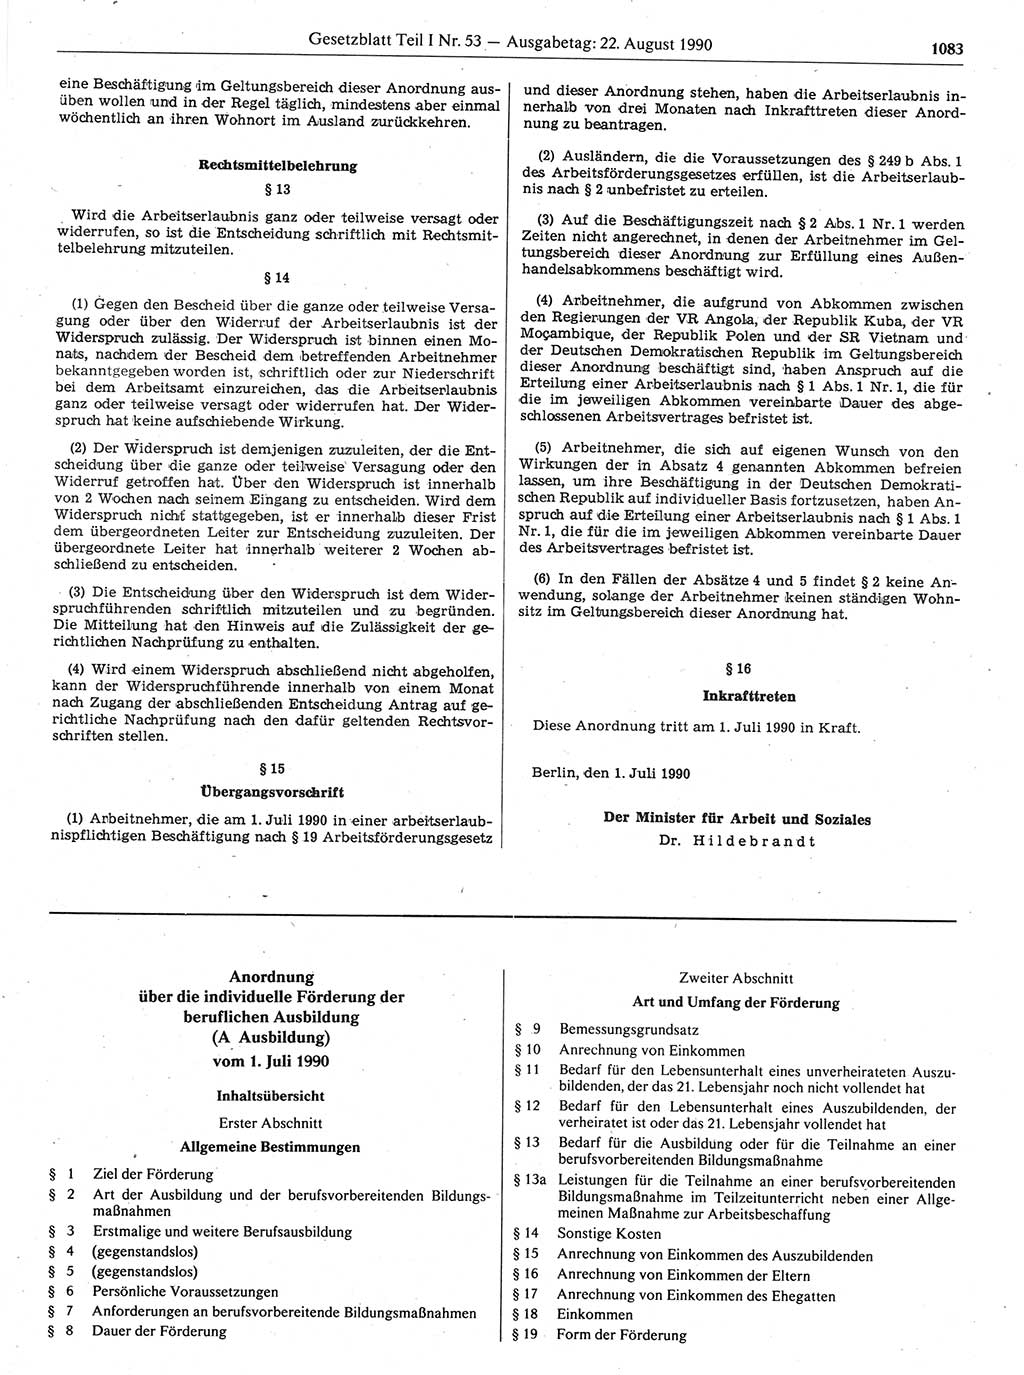 Gesetzblatt (GBl.) der Deutschen Demokratischen Republik (DDR) Teil Ⅰ 1990, Seite 1083 (GBl. DDR Ⅰ 1990, S. 1083)